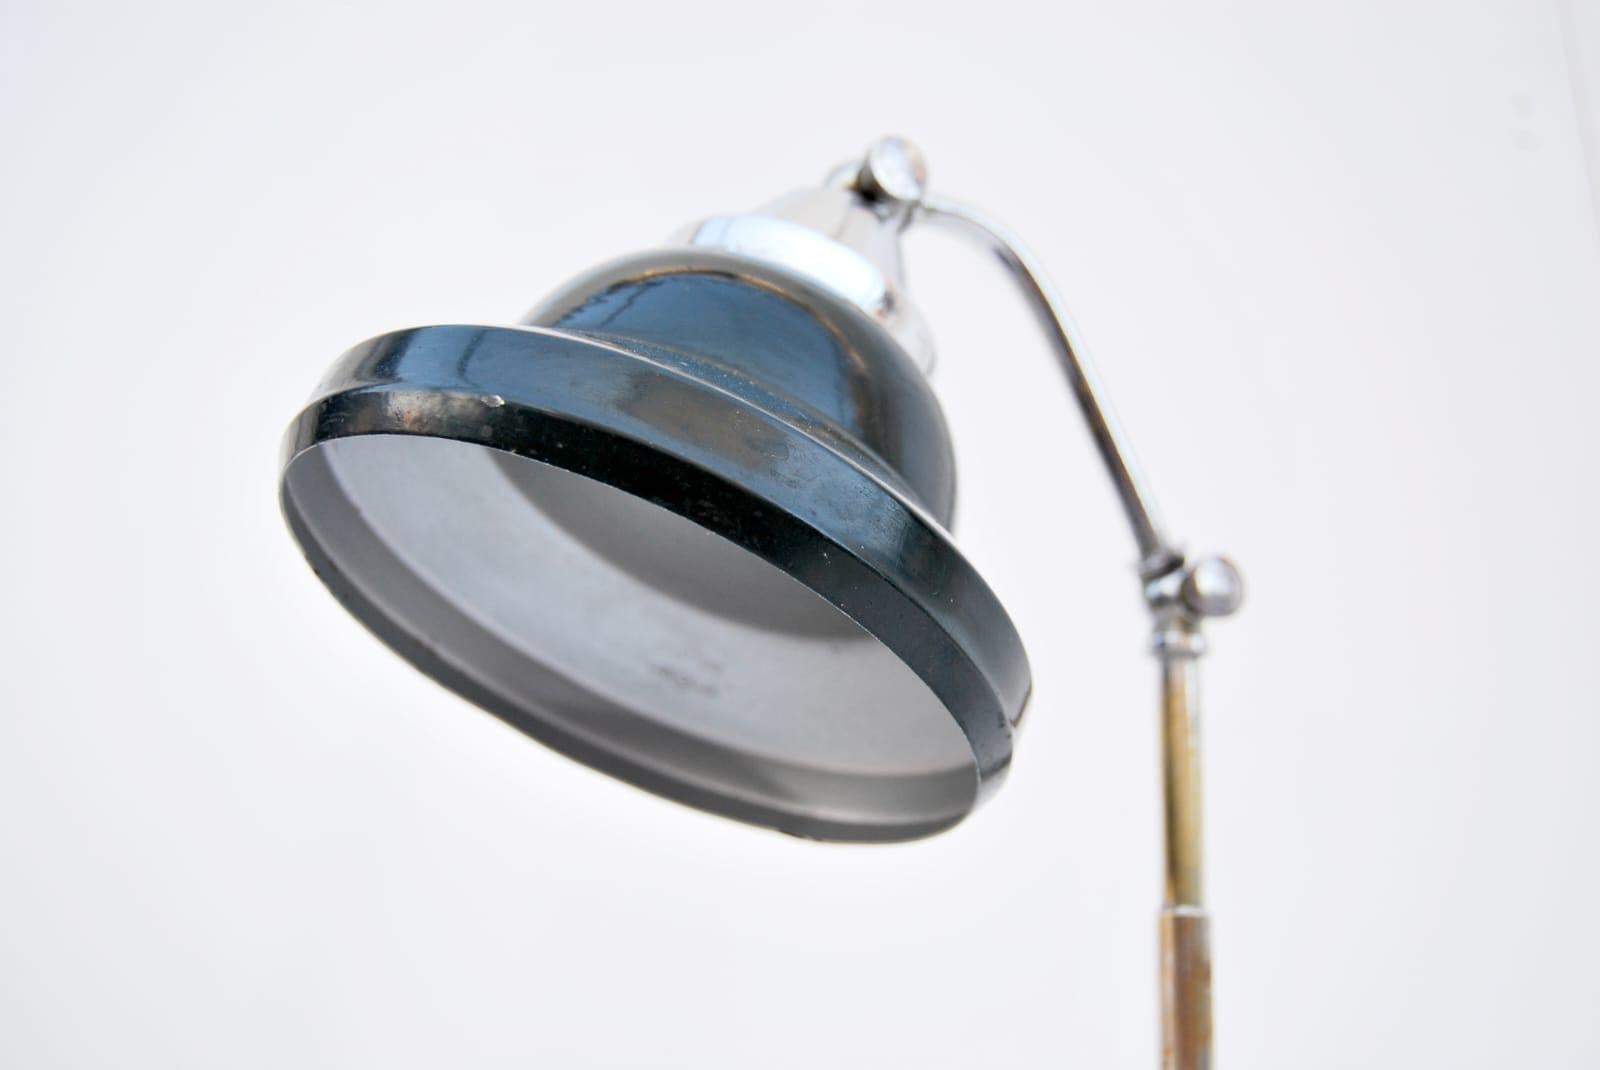 Lampe de table LARIOLUX, années 1930, fabriquée en Italie. 
Magnifique lampe de table ministérielle italienne LARIOLUX en aluminium, métal et bachilite. La lampe est fonctionnelle et en excellent état, prête à l'emploi.   
Le prix de l'expédition